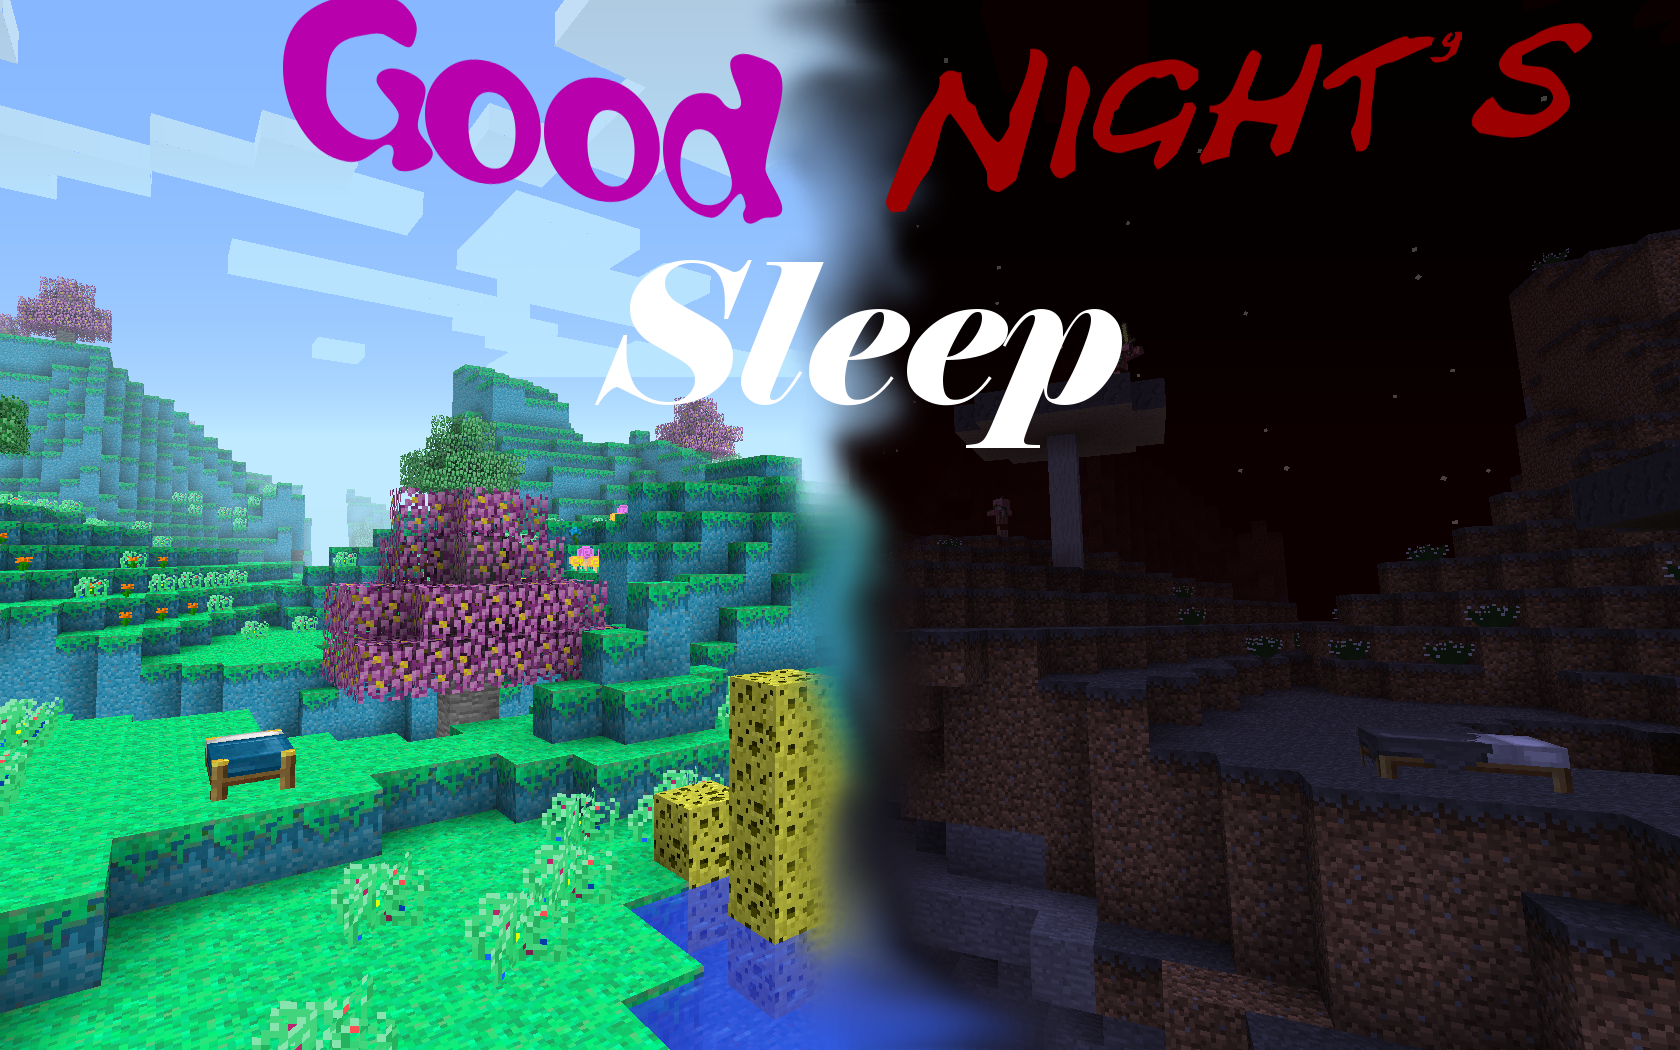 Good Night's Sleep screenshot 1